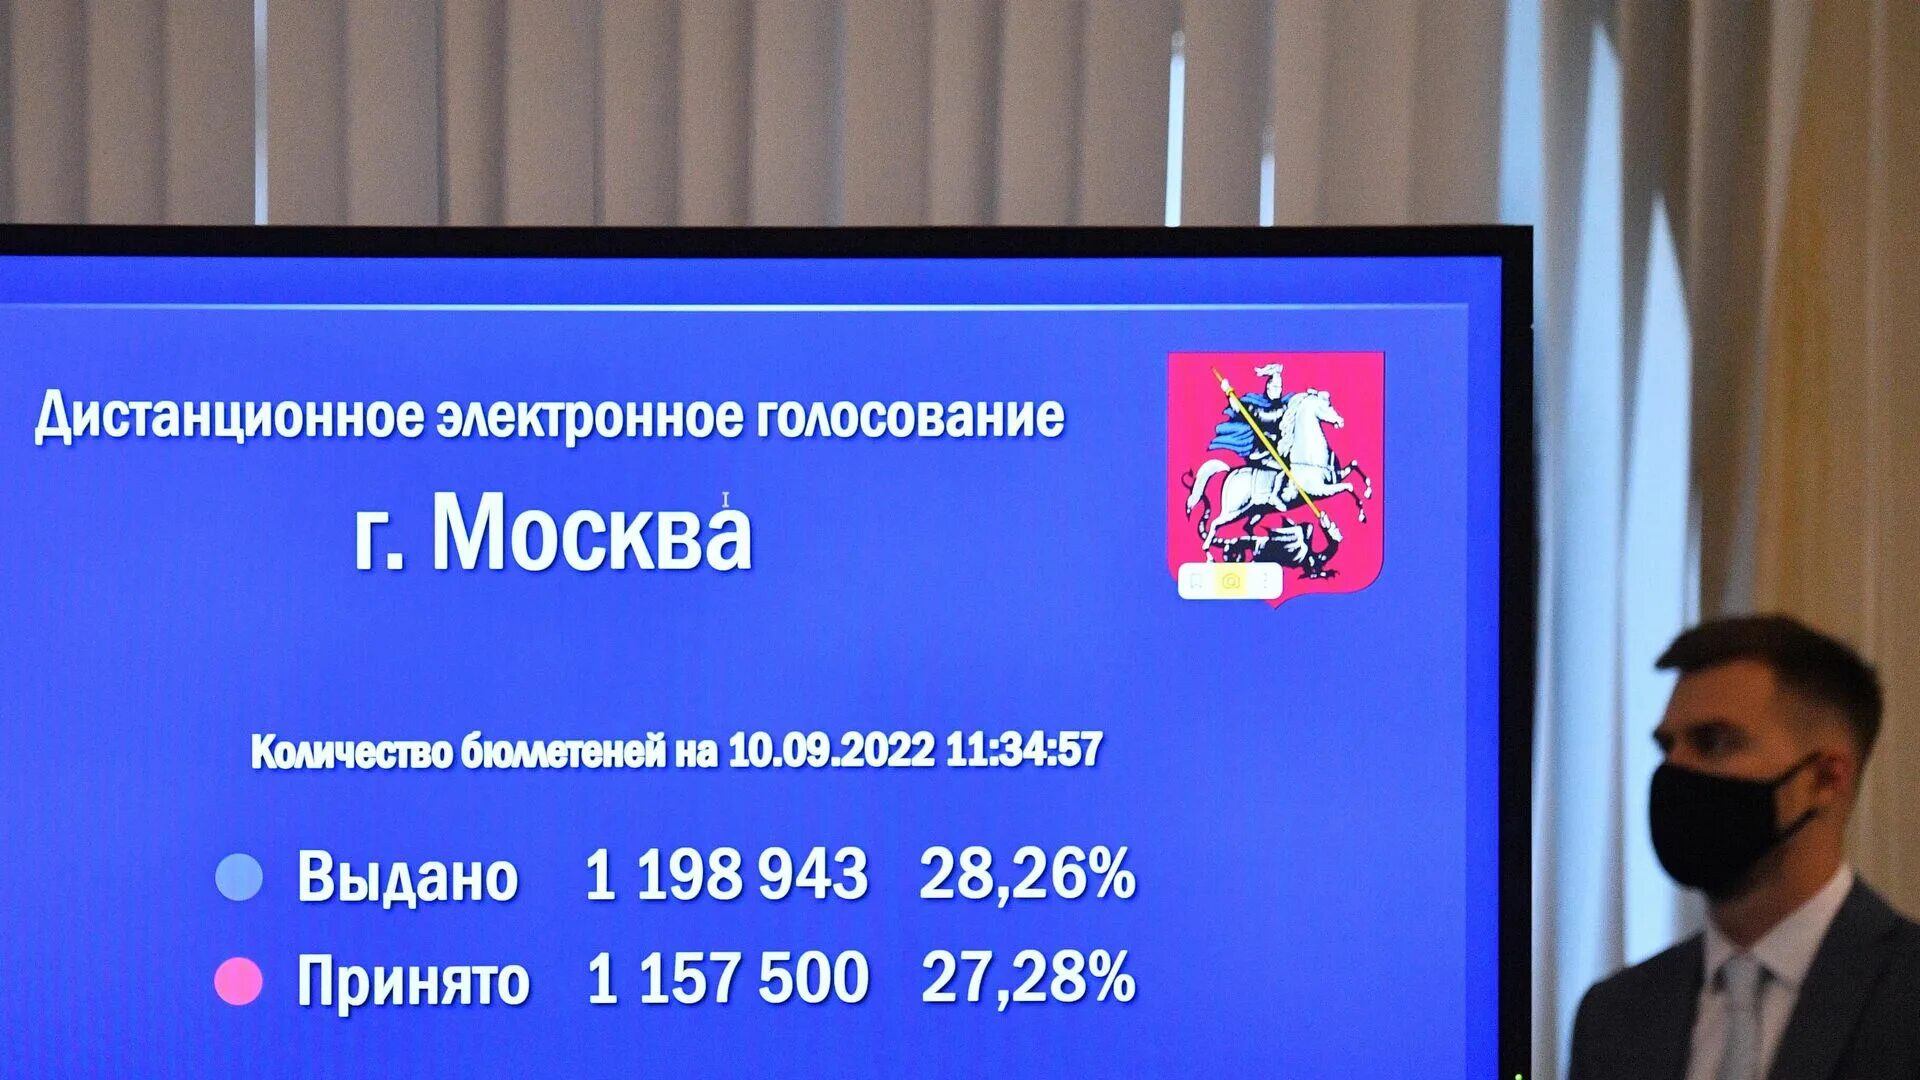 Сколько проголосовало в москве на данный. Голосование в Москве 2022. Выборы муниципальных депутатов в Москве 2022. Электронное голосование. ДЭГ голосование 2022.